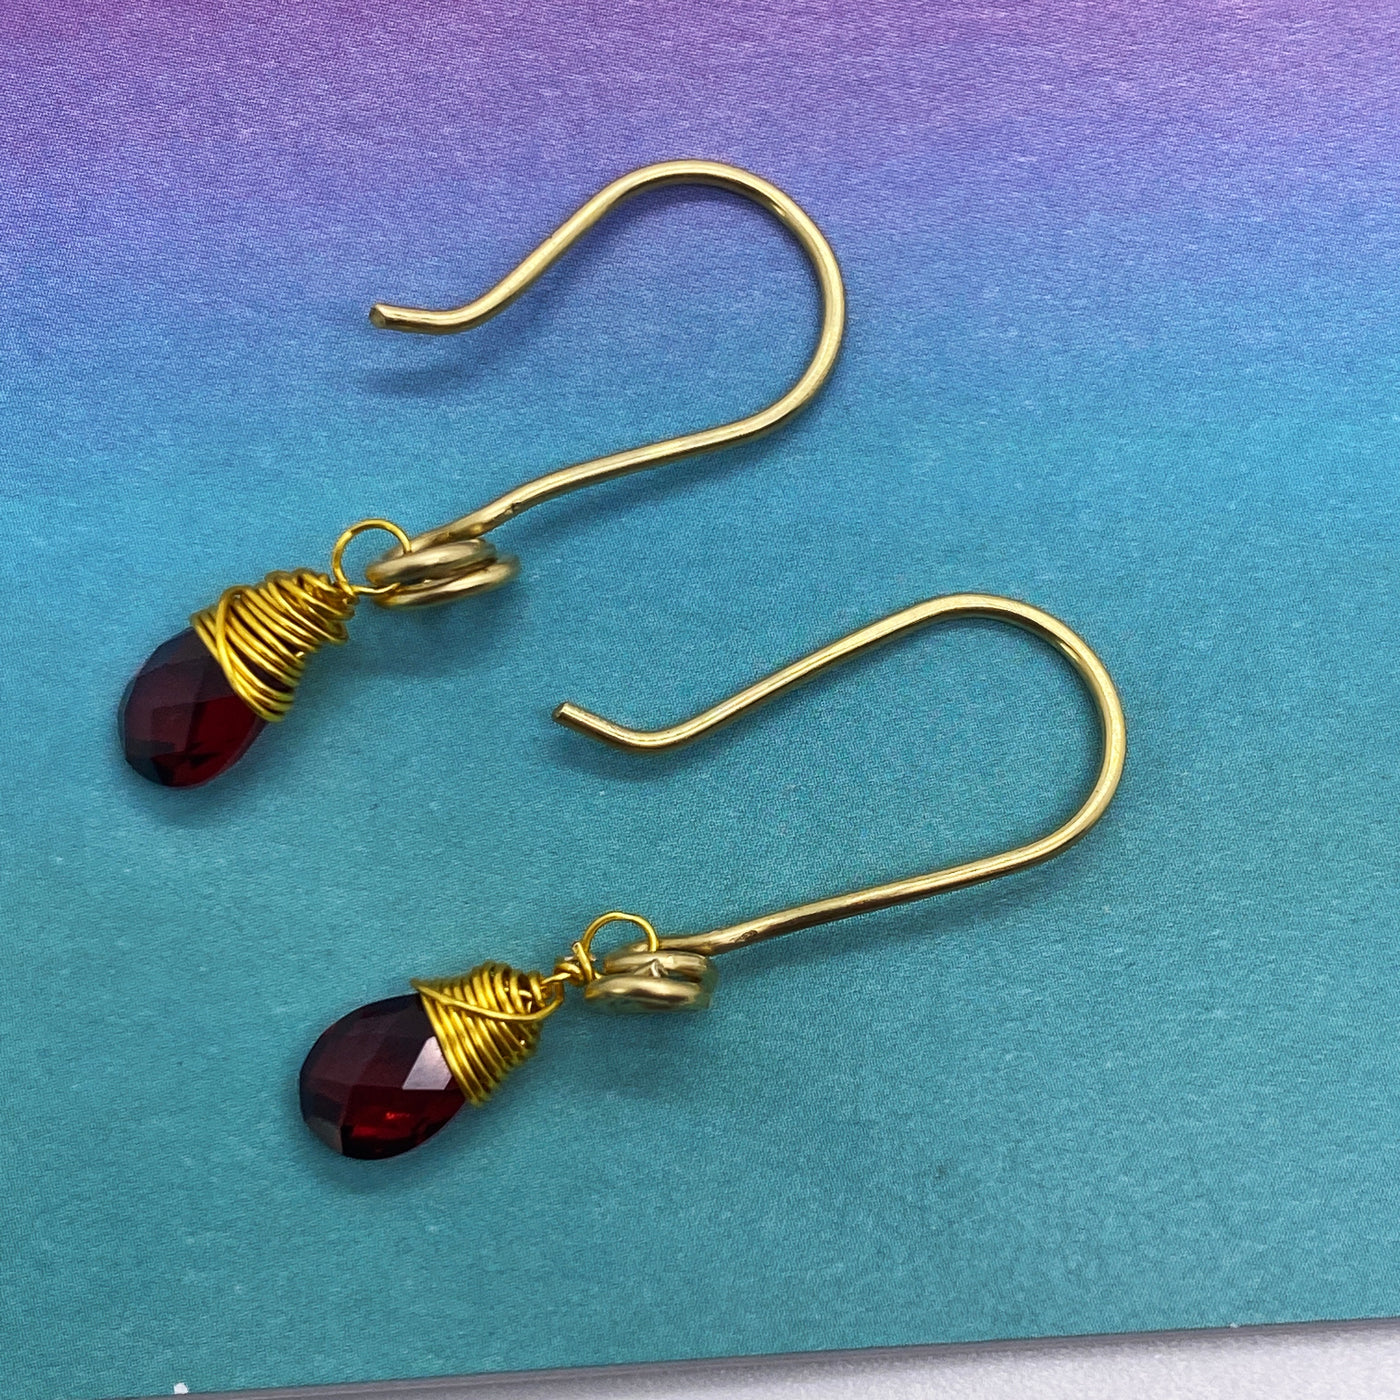 Garnet briolettes 9X6 mm pear shaped wrapped in wire earrings (3,5 cm long)